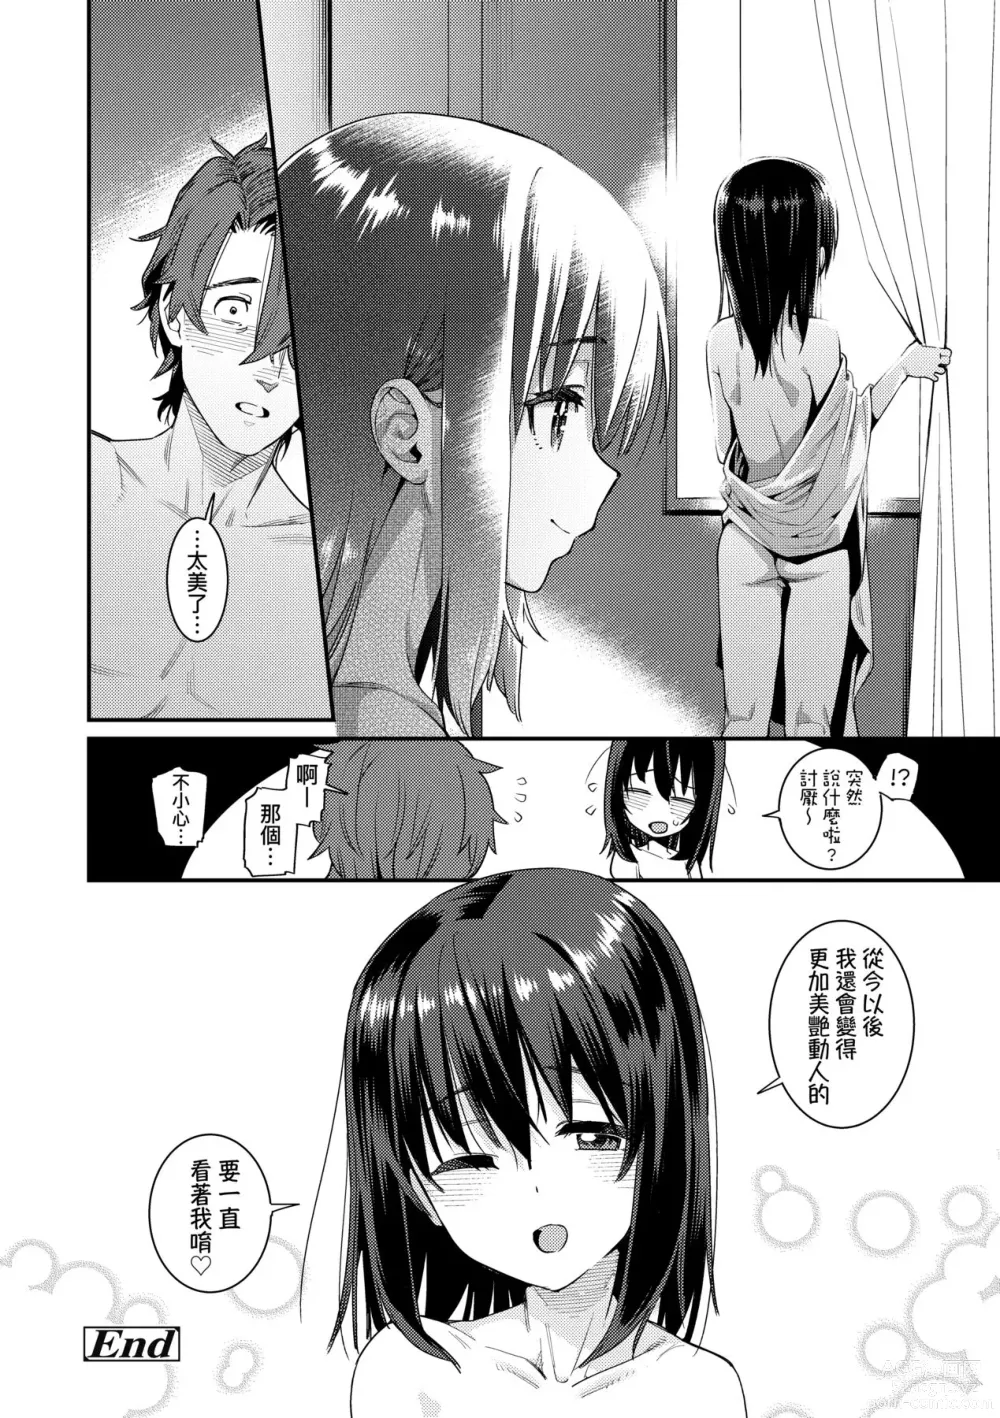 Page 211 of manga Itoshiki Wagaya (decensored)